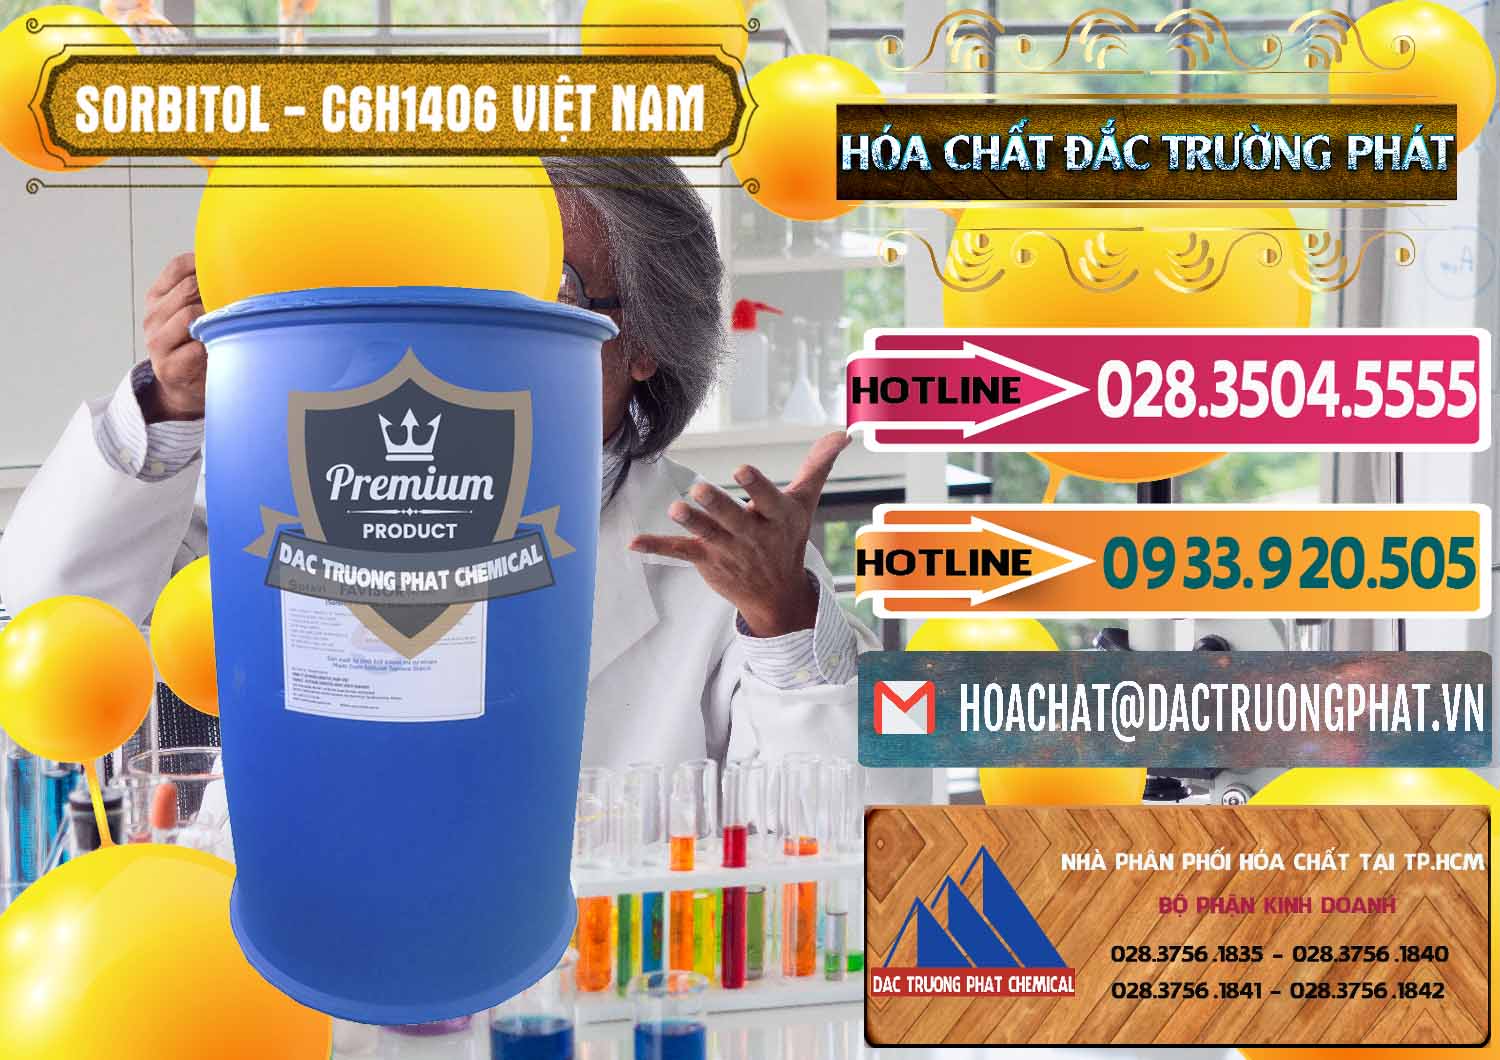 Nhà cung cấp ( kinh doanh ) Sorbitol - C6H14O6 Lỏng 70% Food Grade Việt Nam - 0438 - Nhà phân phối ( bán ) hóa chất tại TP.HCM - dactruongphat.vn